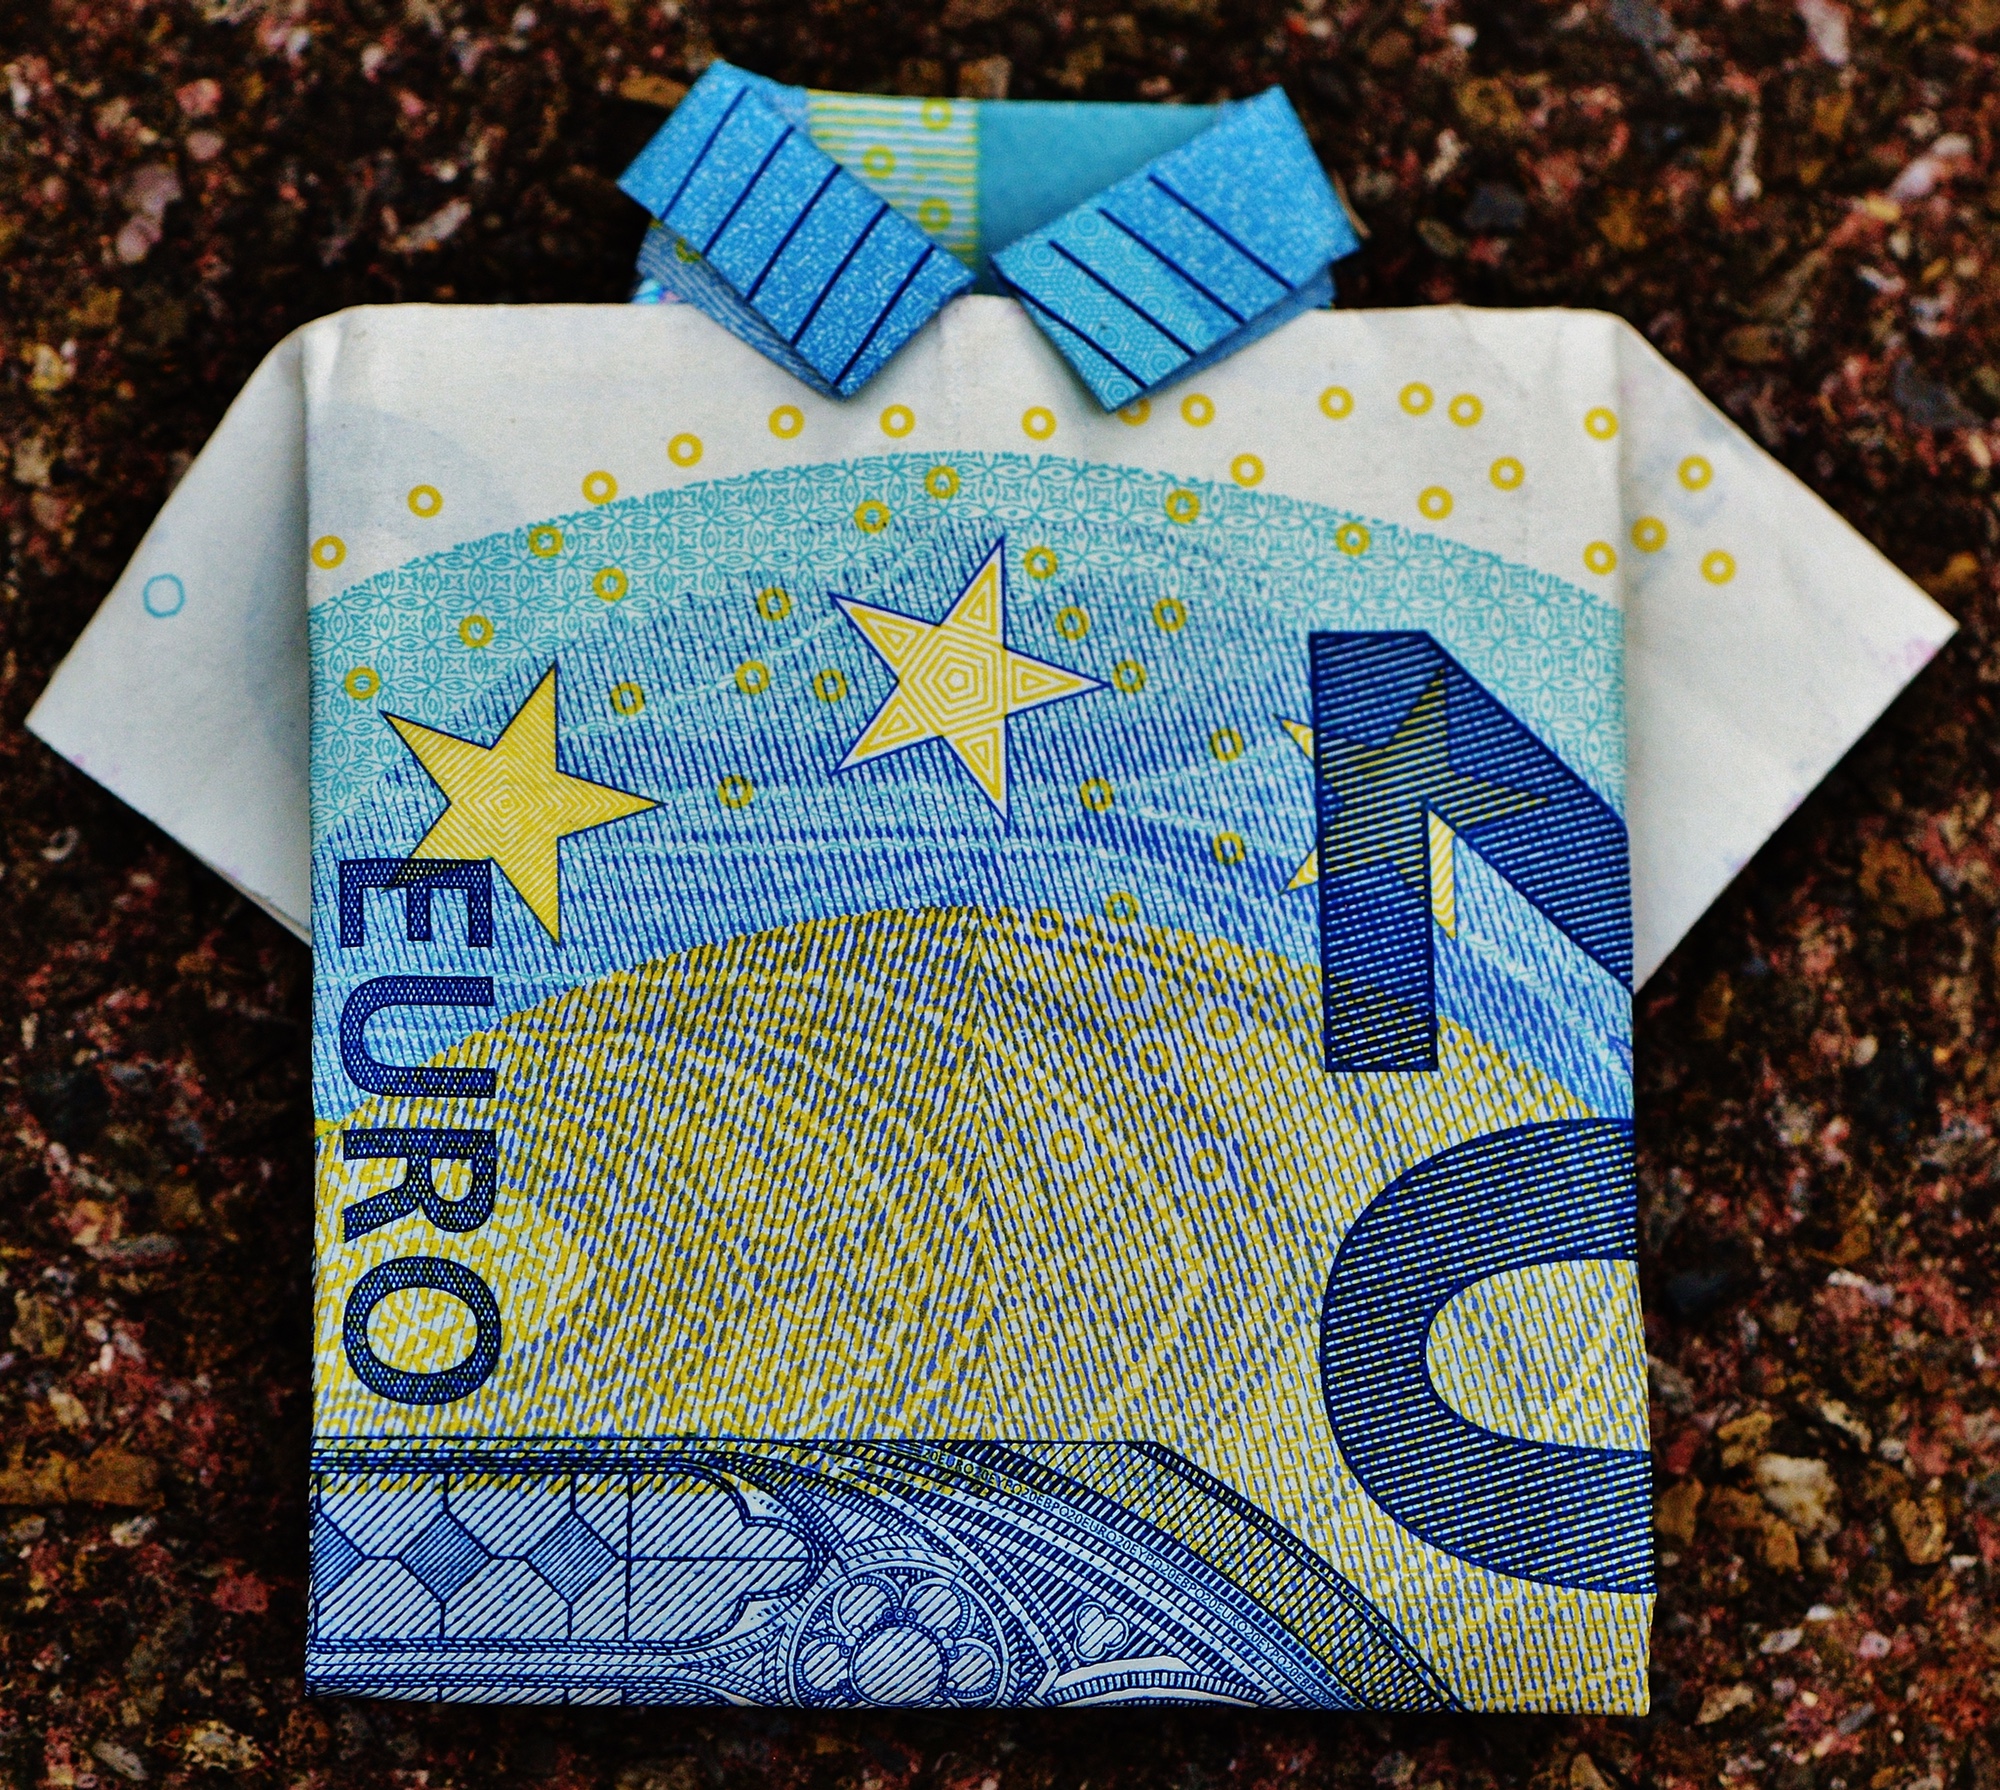 Foto: Euro-Geldschein, der zu einem Hemd gefaltet wurde